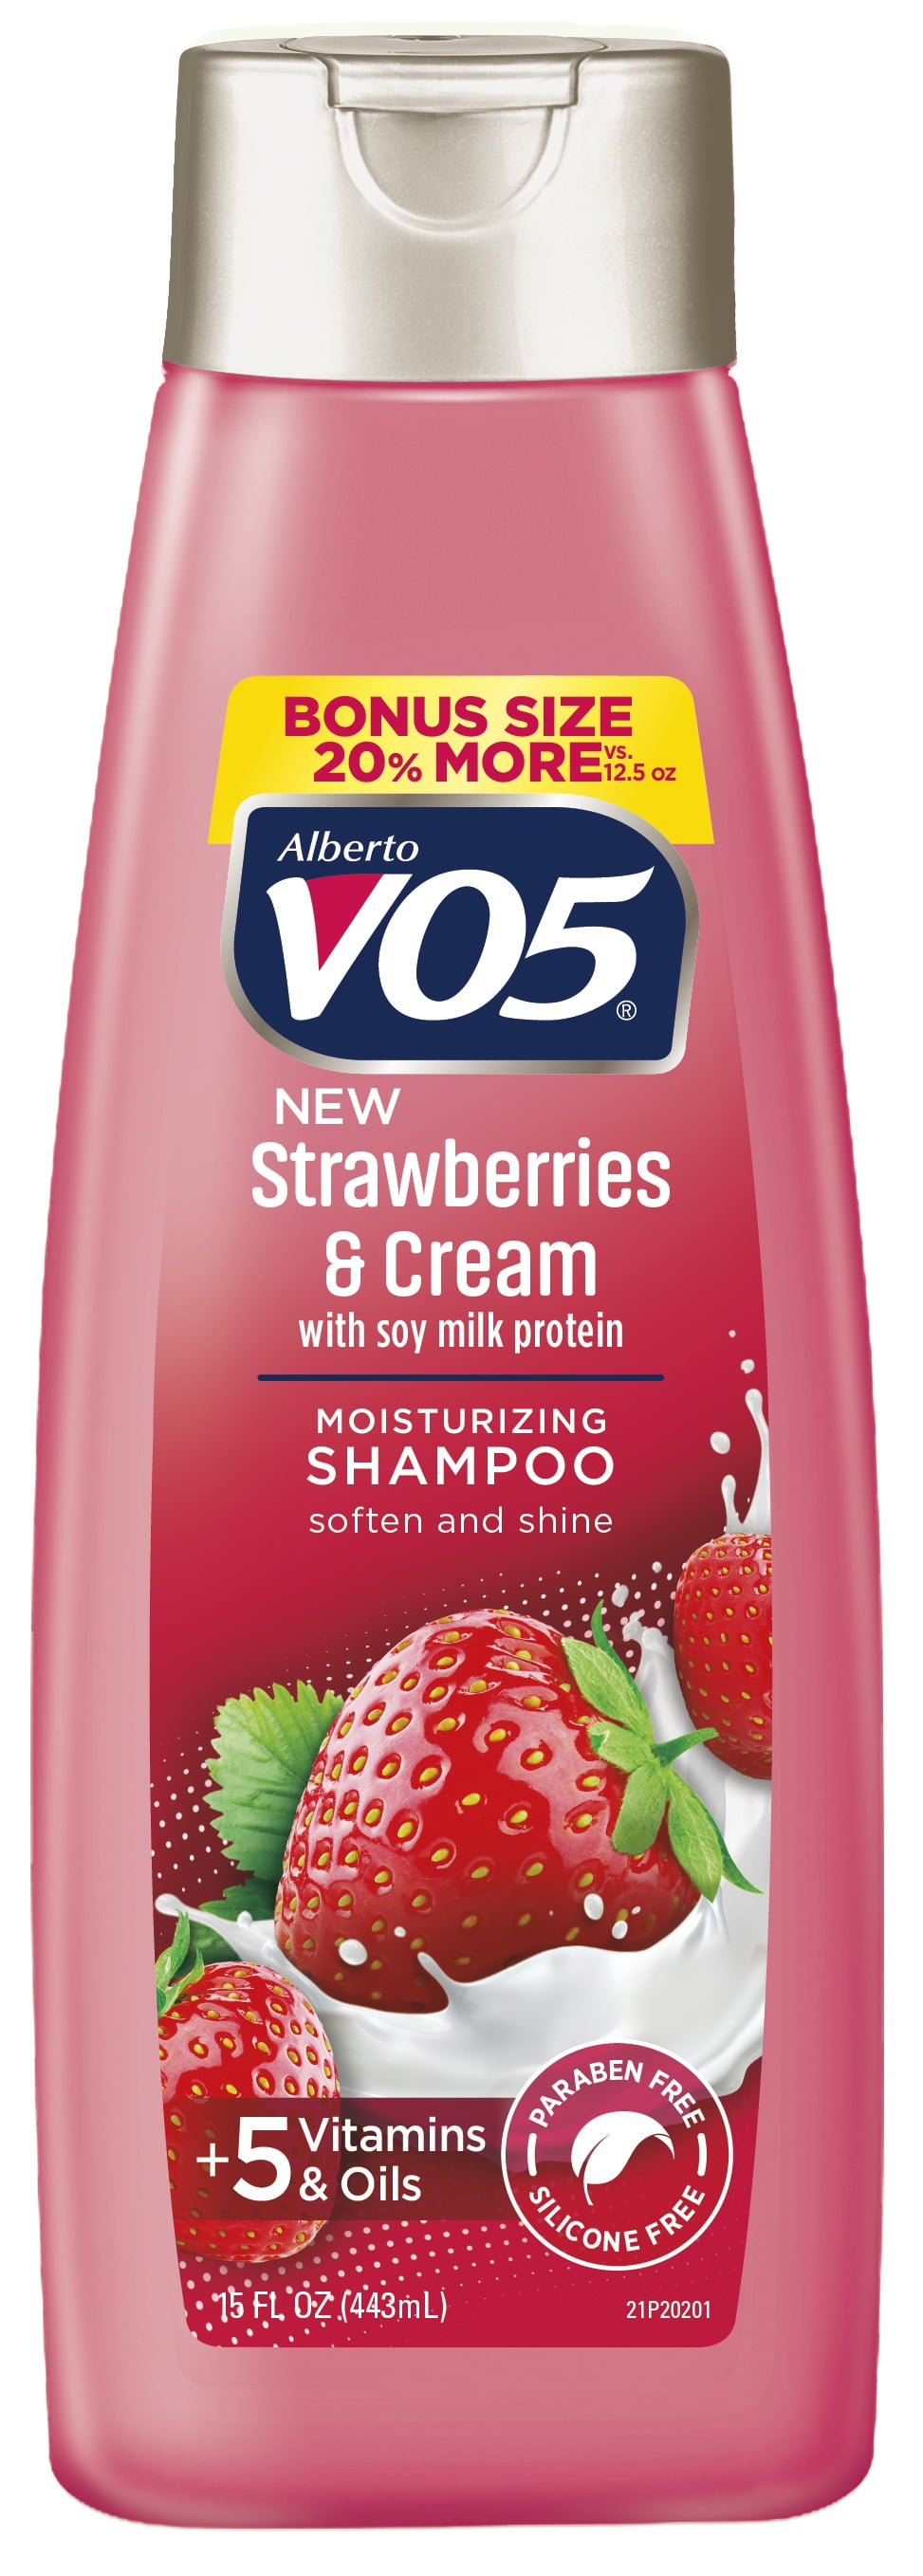 VO5 Moisture Milks 15 Fl. Oz. Strawberries & Cream Moisturizing Shampoo, 15 Fl Oz.